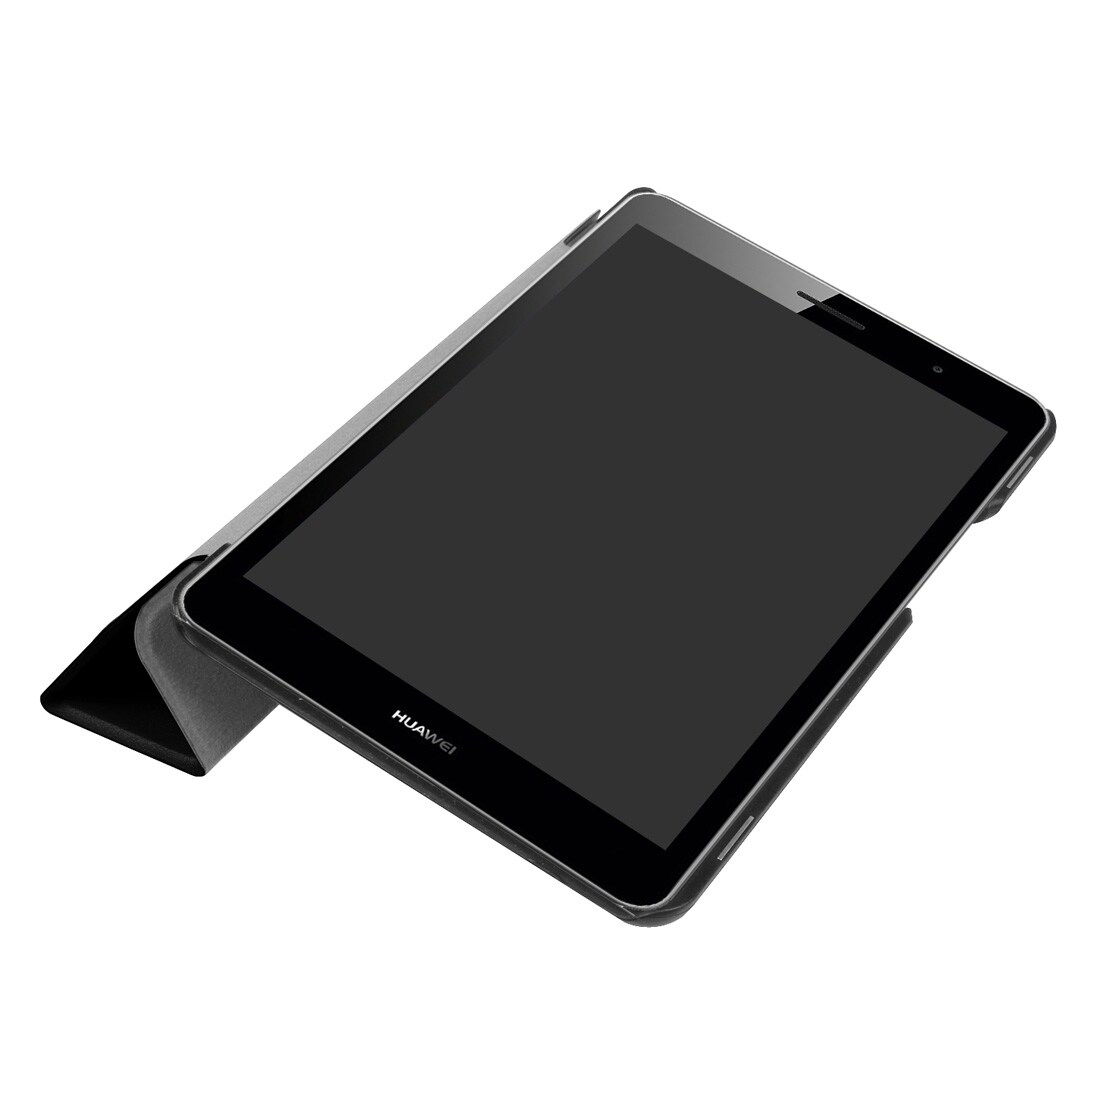 Trifold-fodral / Pad-fodral till Huawei MediaPad T3 8.0